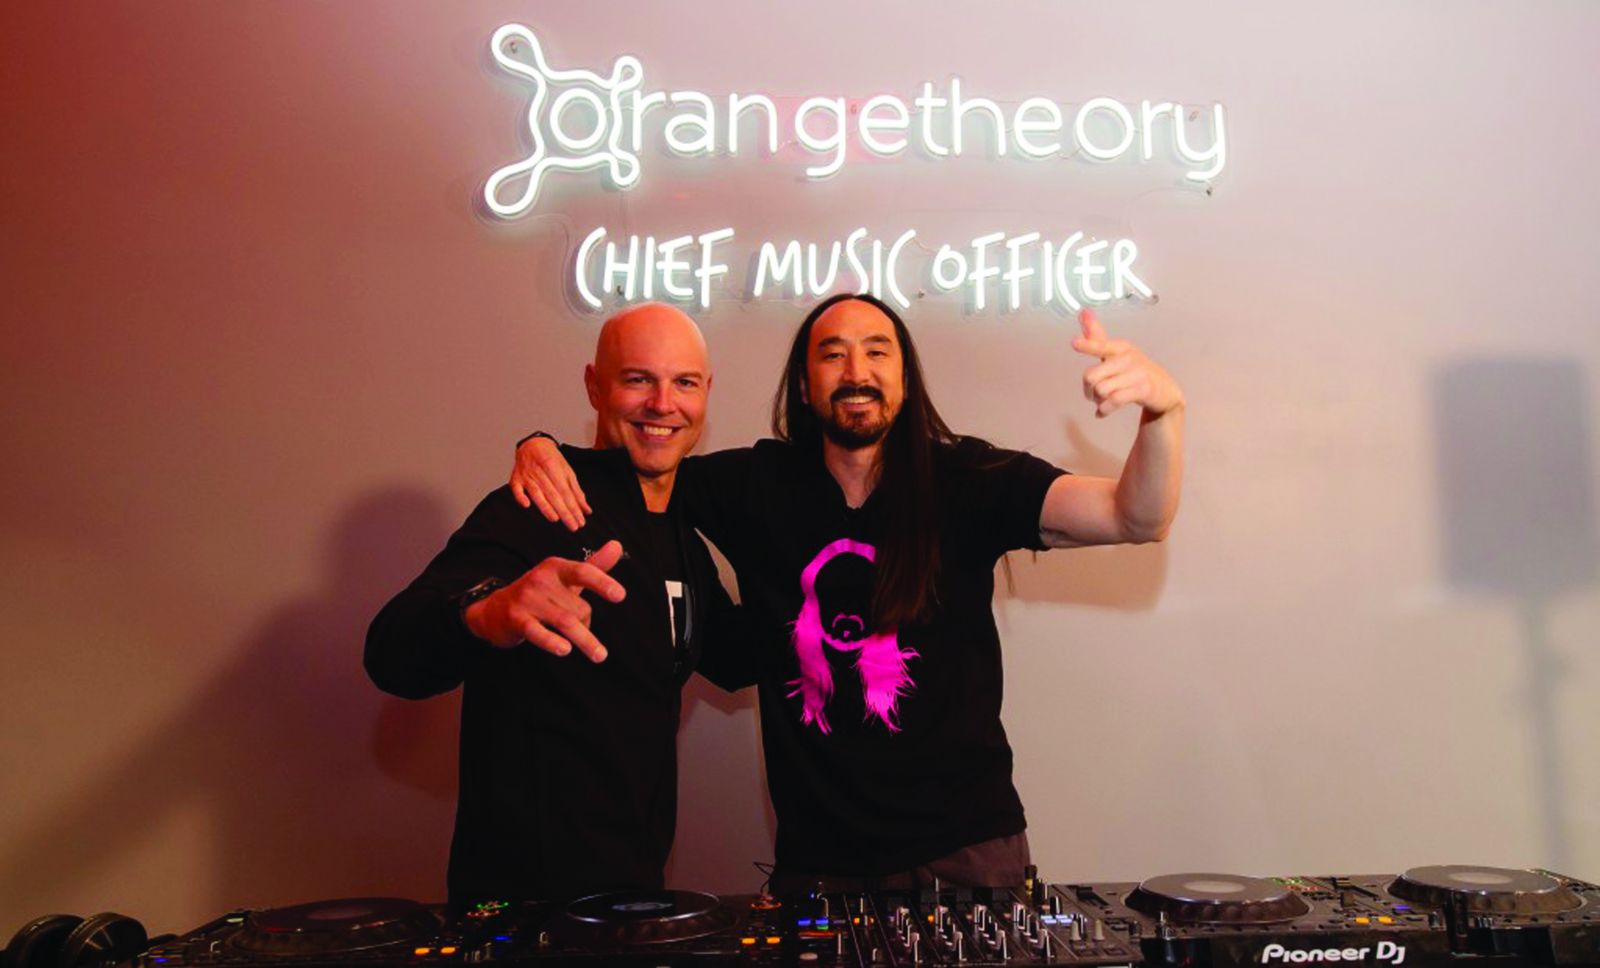 p/Thương hiệu fitness Orangetheory bổ nhiệm DJ nổi tiếng Steve Aoki làm giám đốc âm nhạc. Ảnh: AP